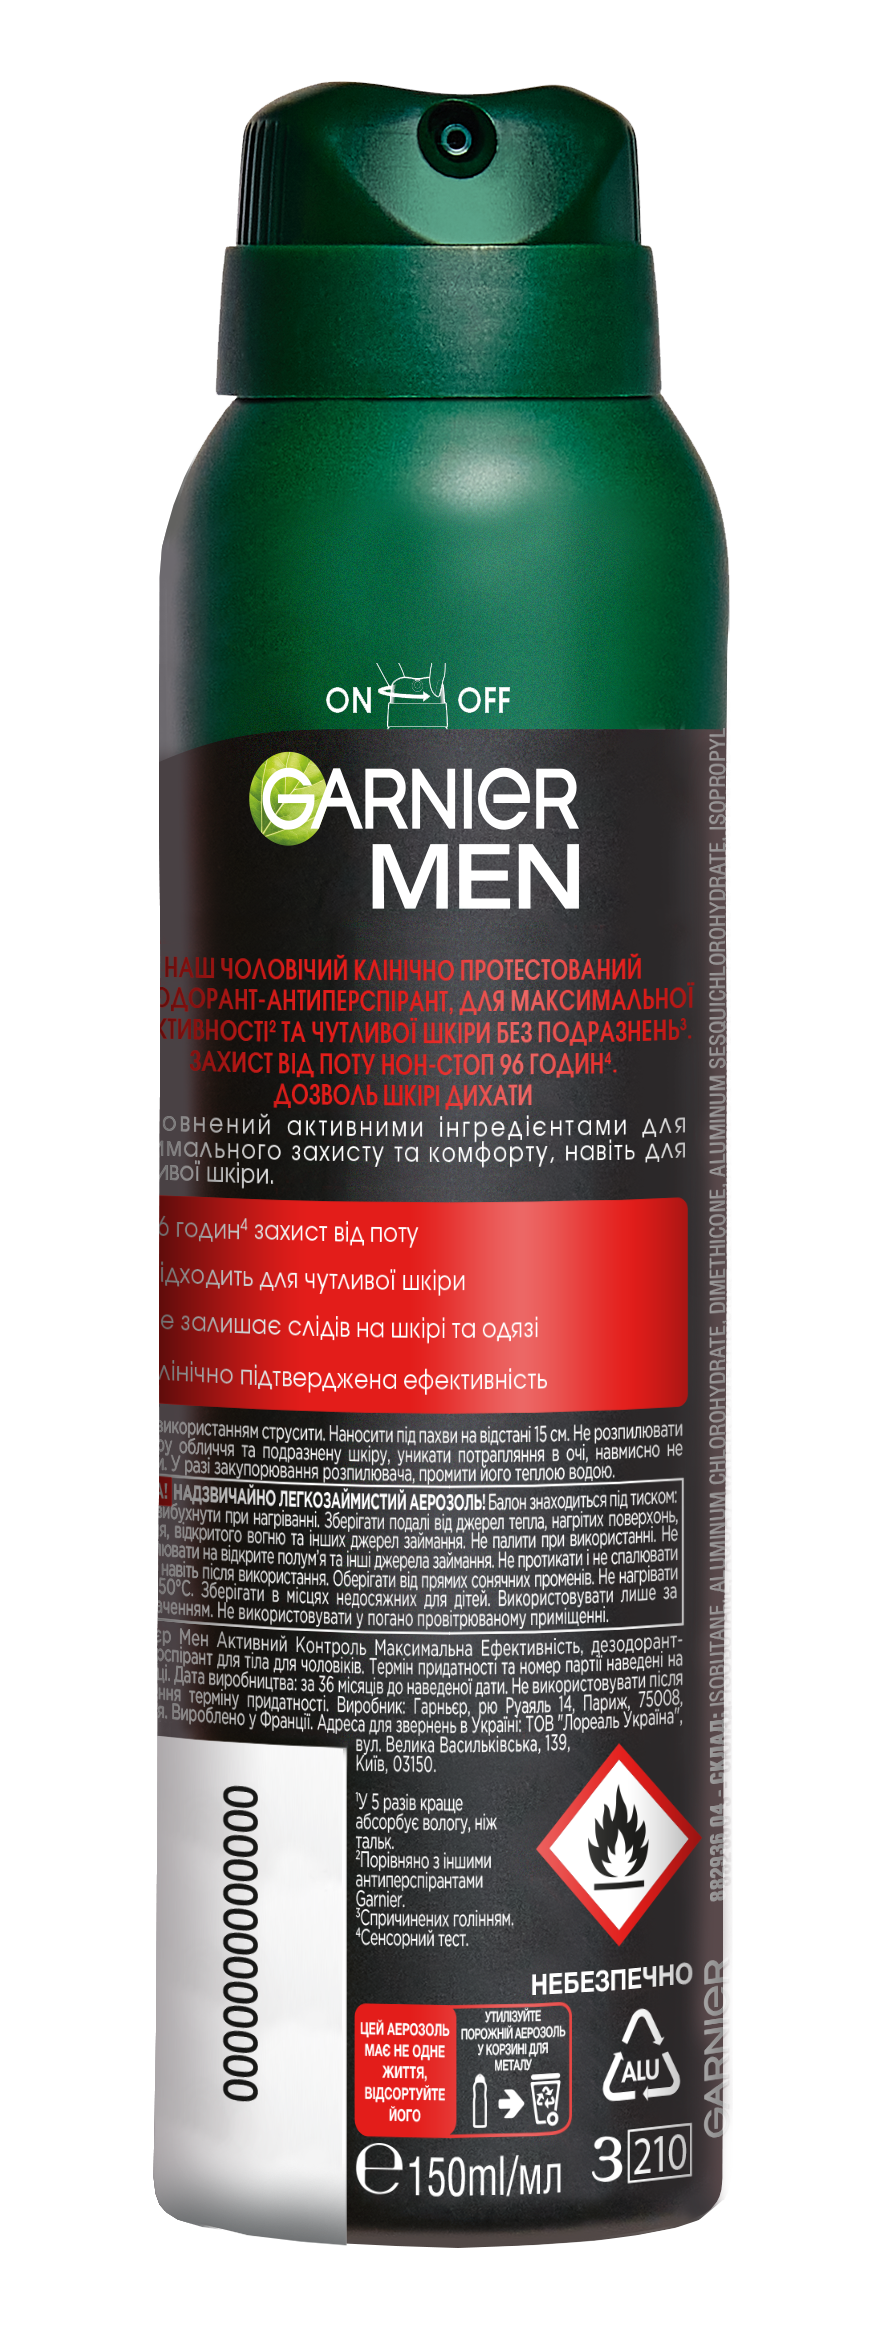 Дезодорант-антиперспірант Garnier Mineral Активний контроль і максимальна ефективність, спрей, 150 мл - фото 2